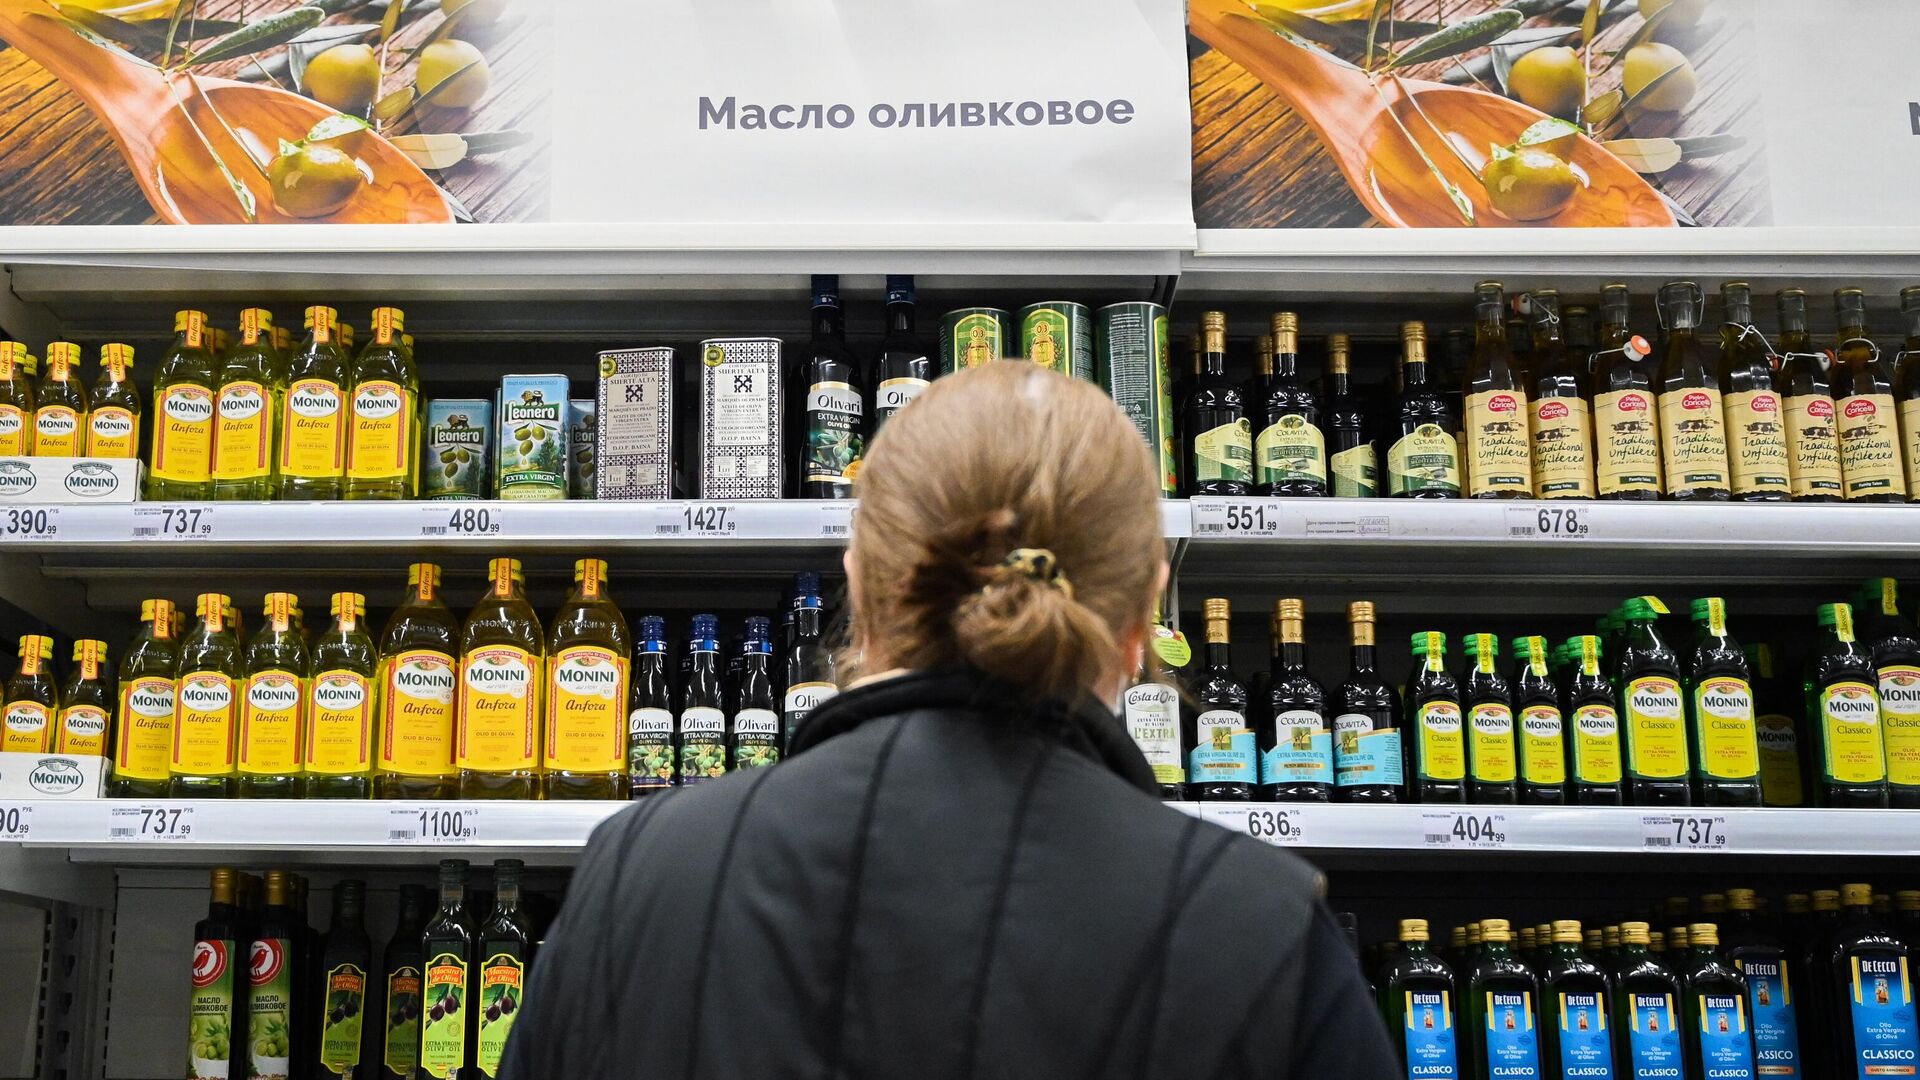 Продажа оливкового масла в сети продуктовых гипермаркетов Ашан (Auchan) в Москве - РИА Новости, 1920, 09.03.2021